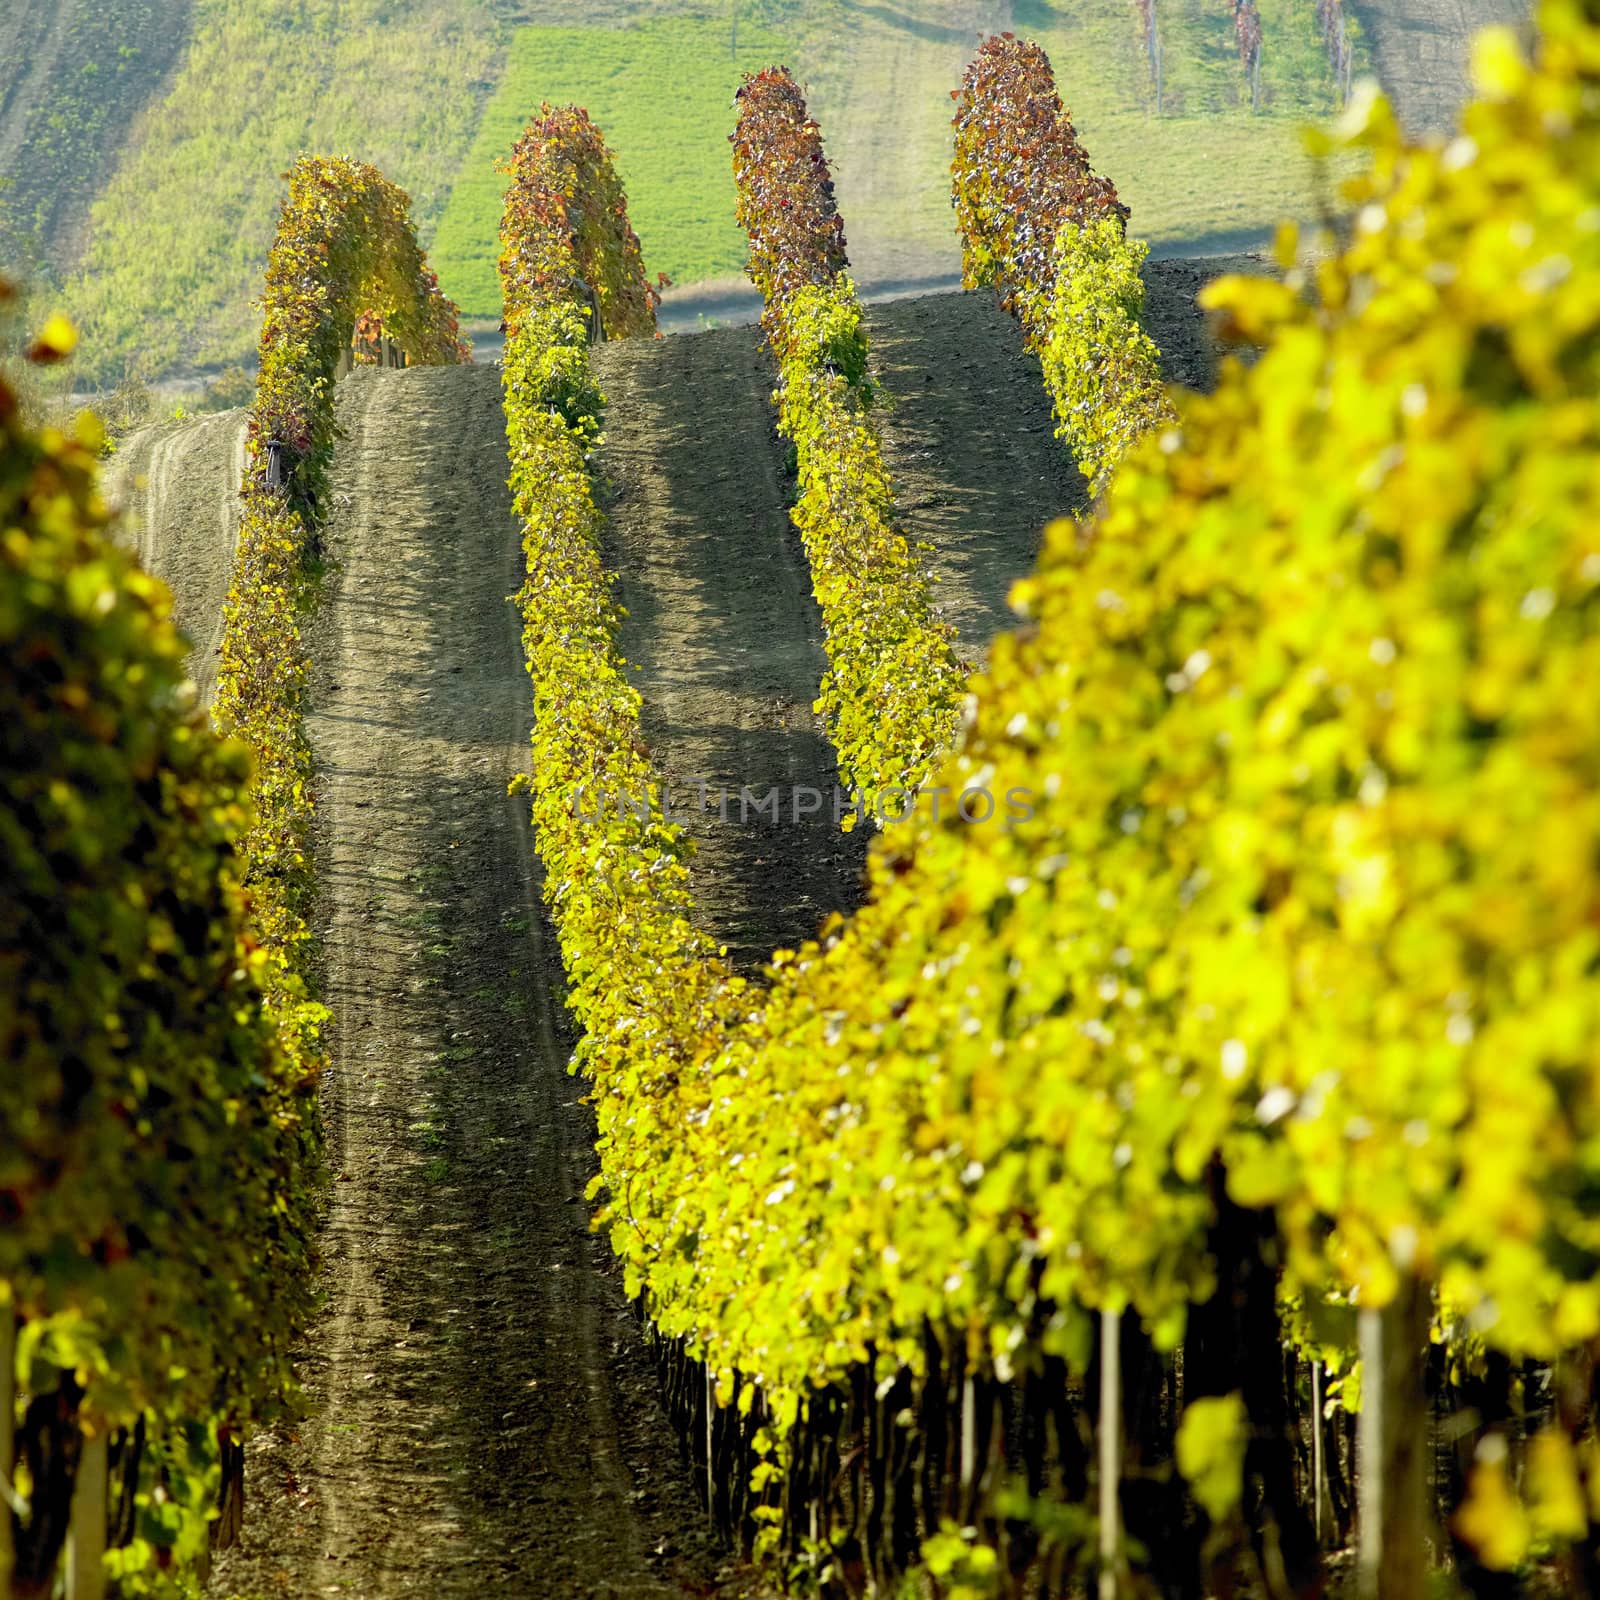 vineyards in Cejkovice region, Czech Republic by phbcz